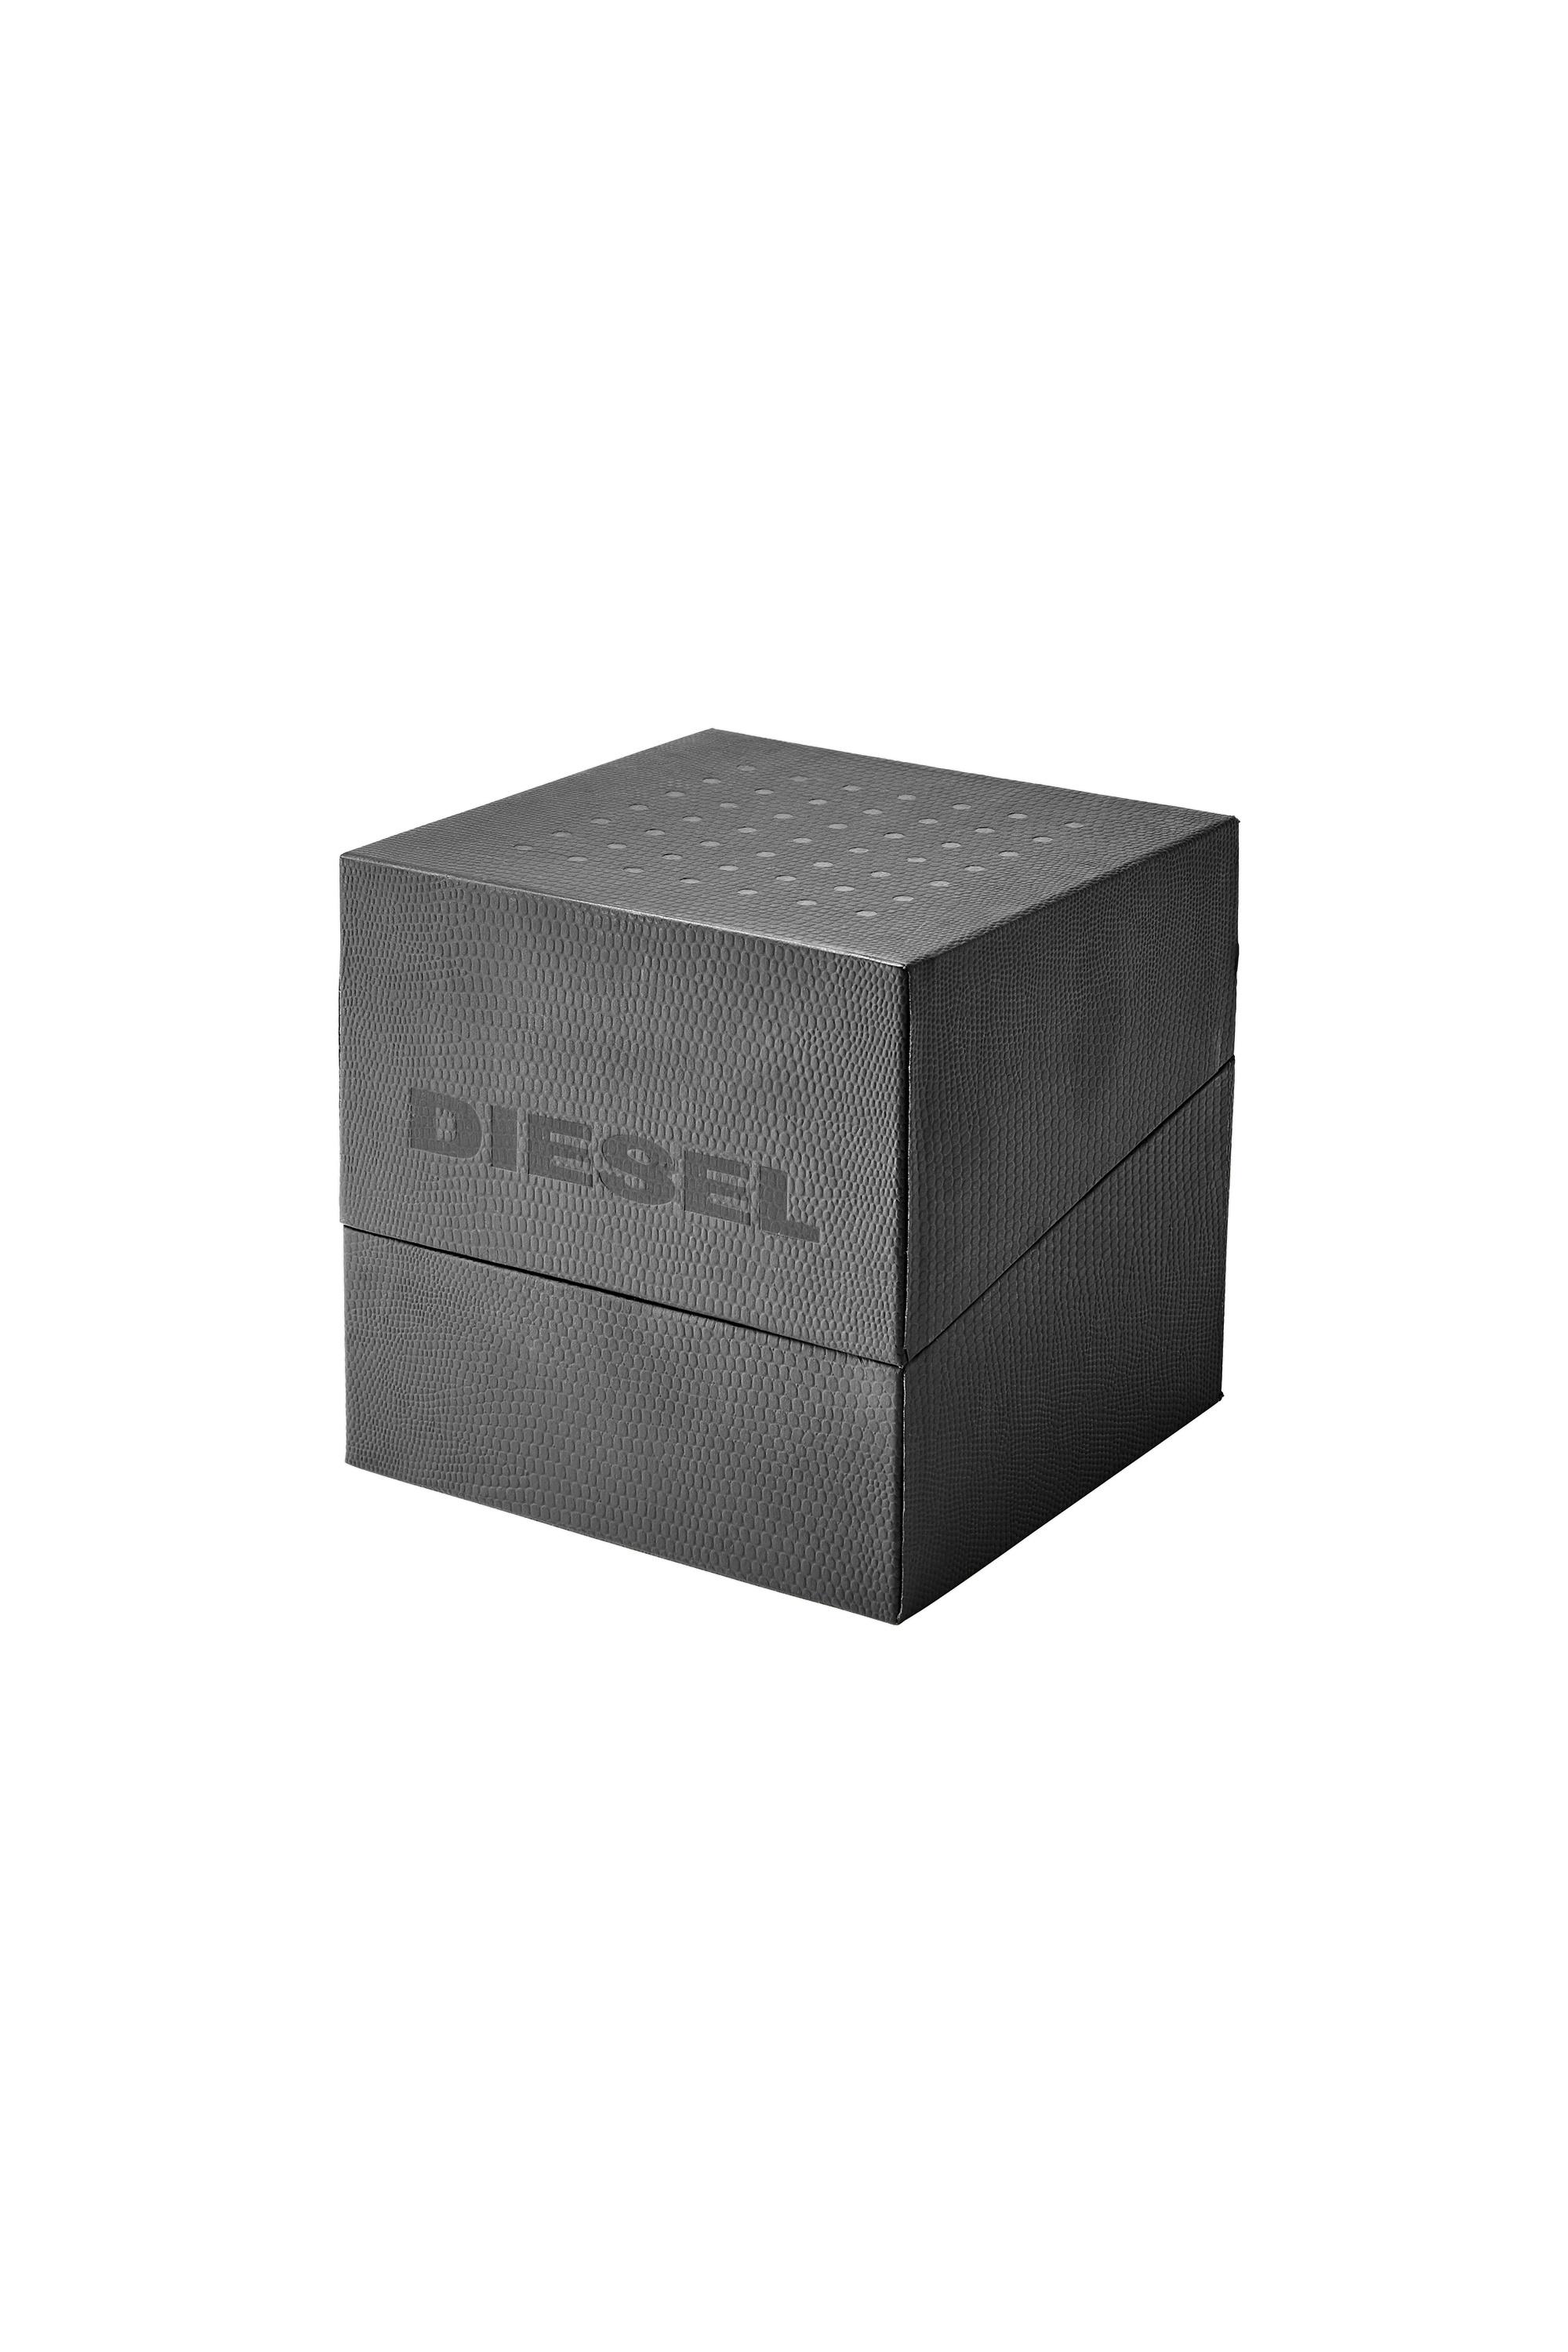 Diesel - DZ4523, Grau - Image 5